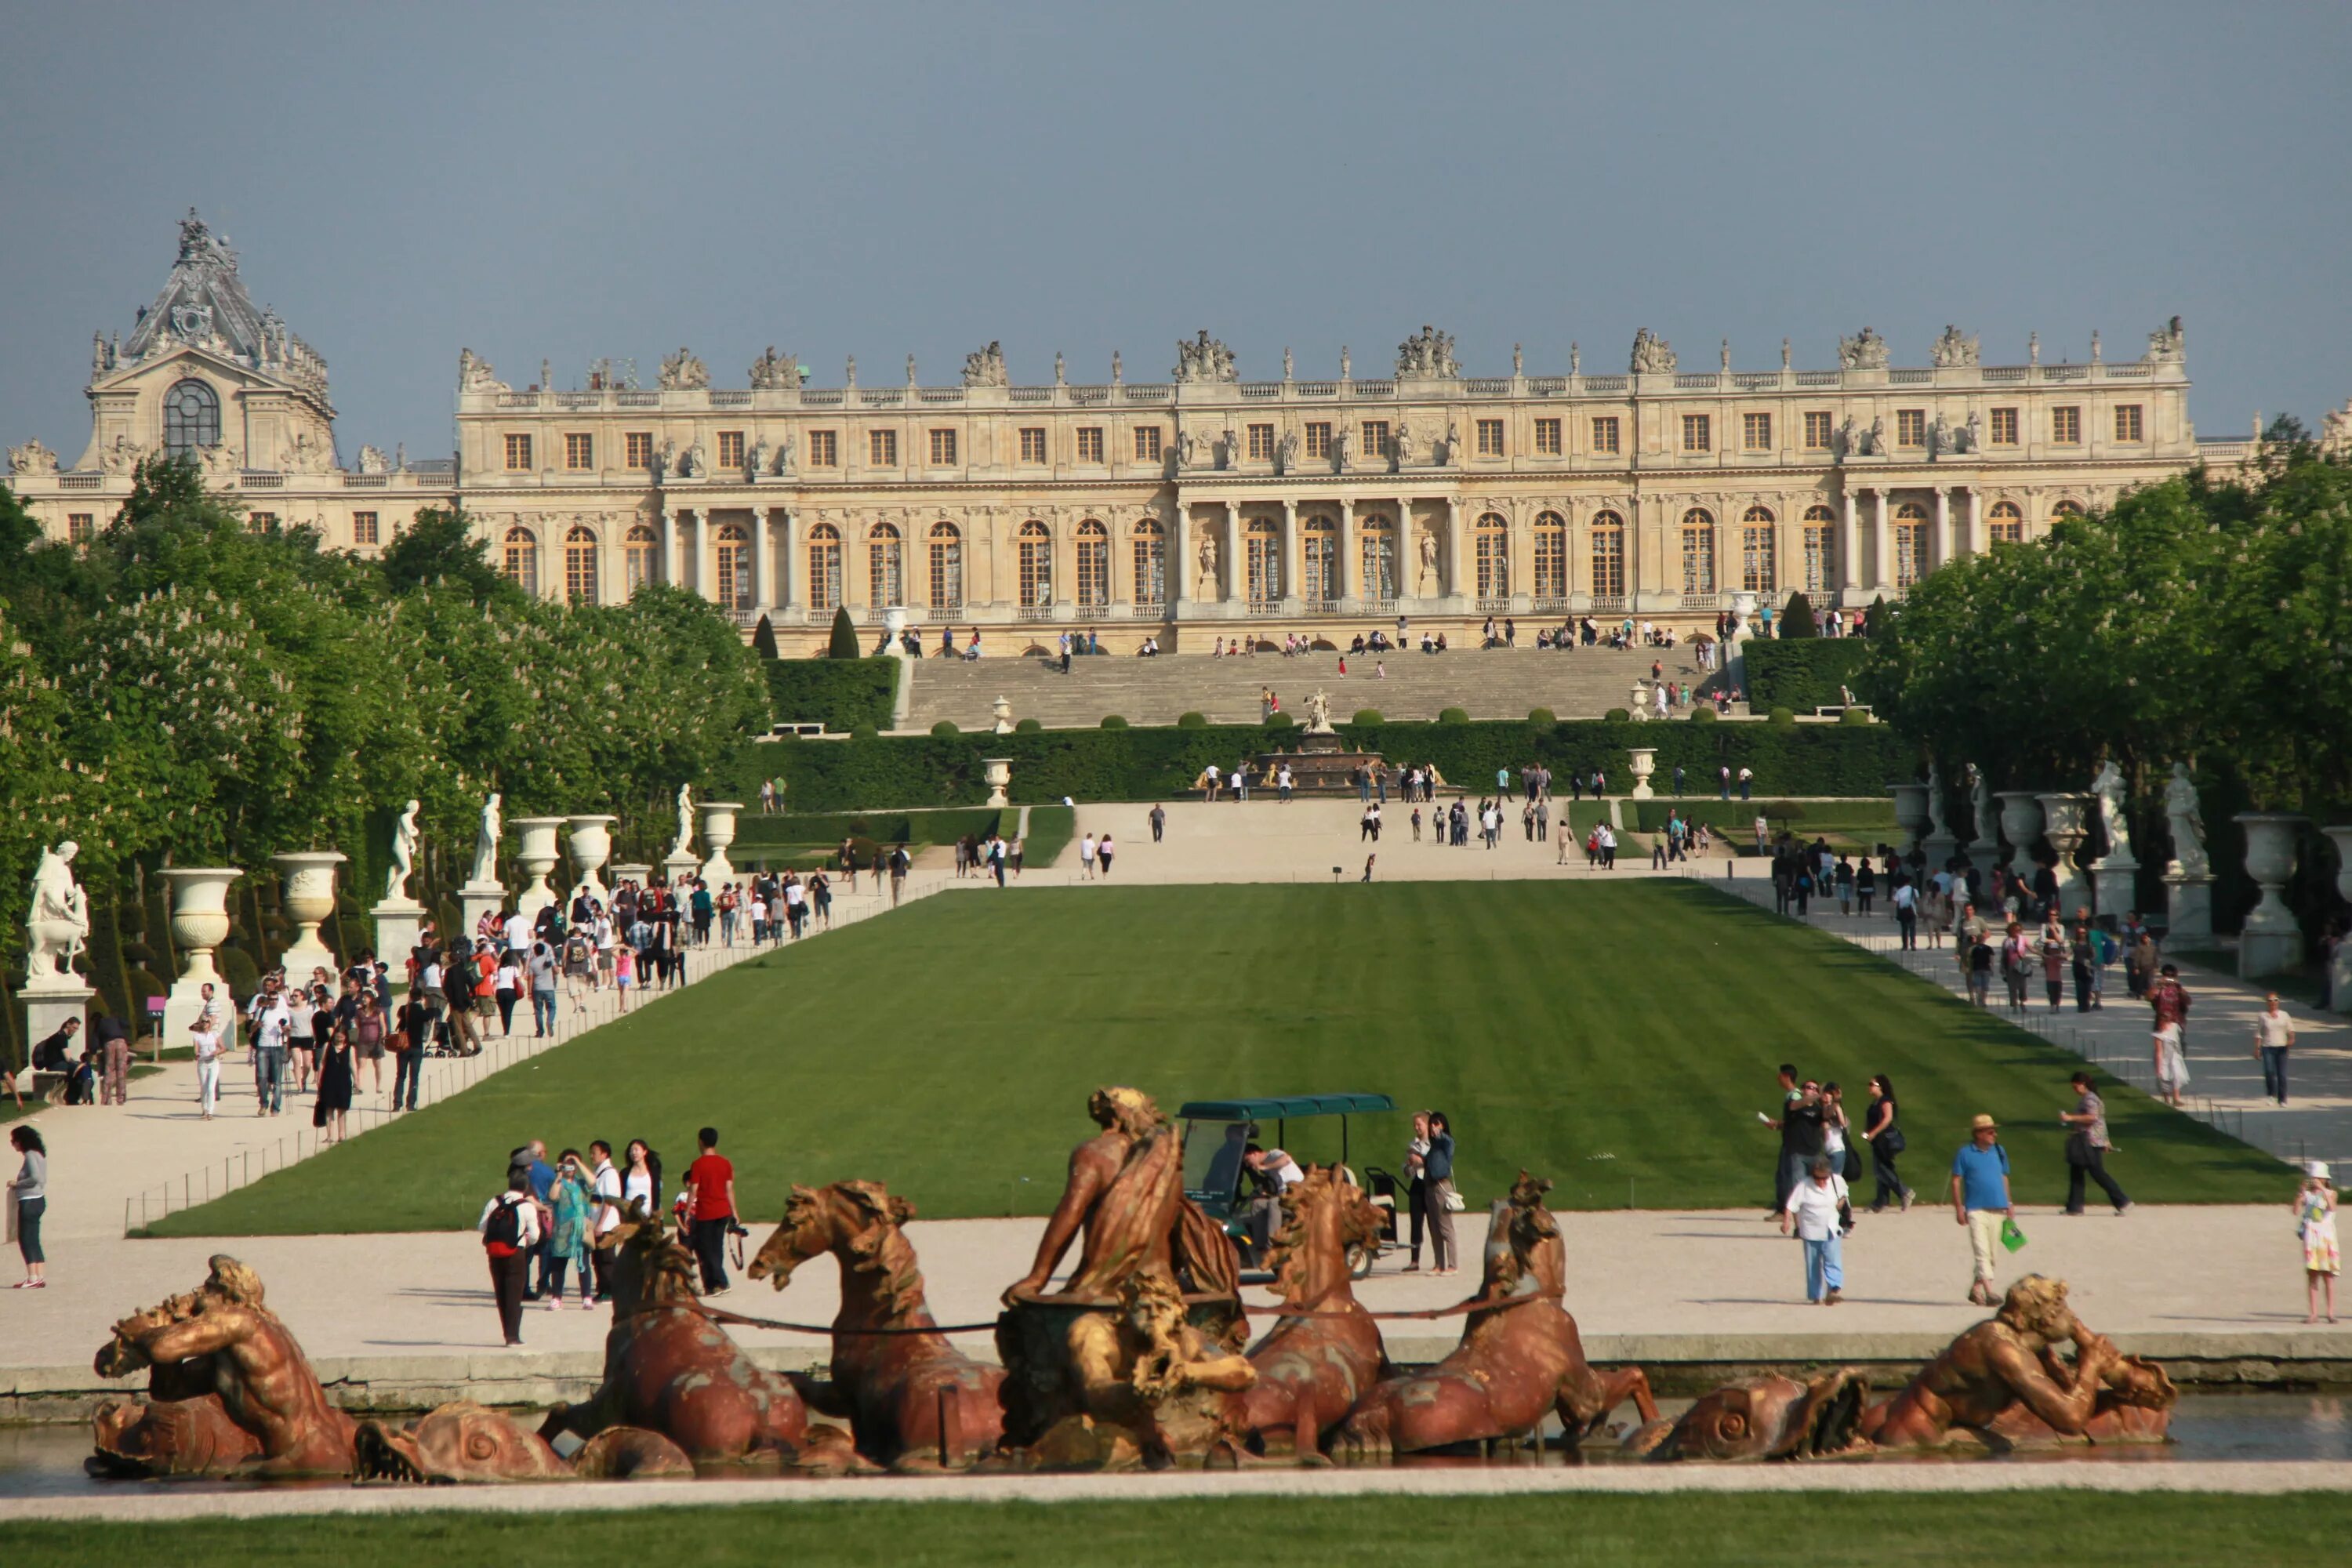 Chateau de versailles. Версальский дворец дворцы Франции. Версальский дворец на французском. Дворец и парк в Версале. Шато Версальского дворца.